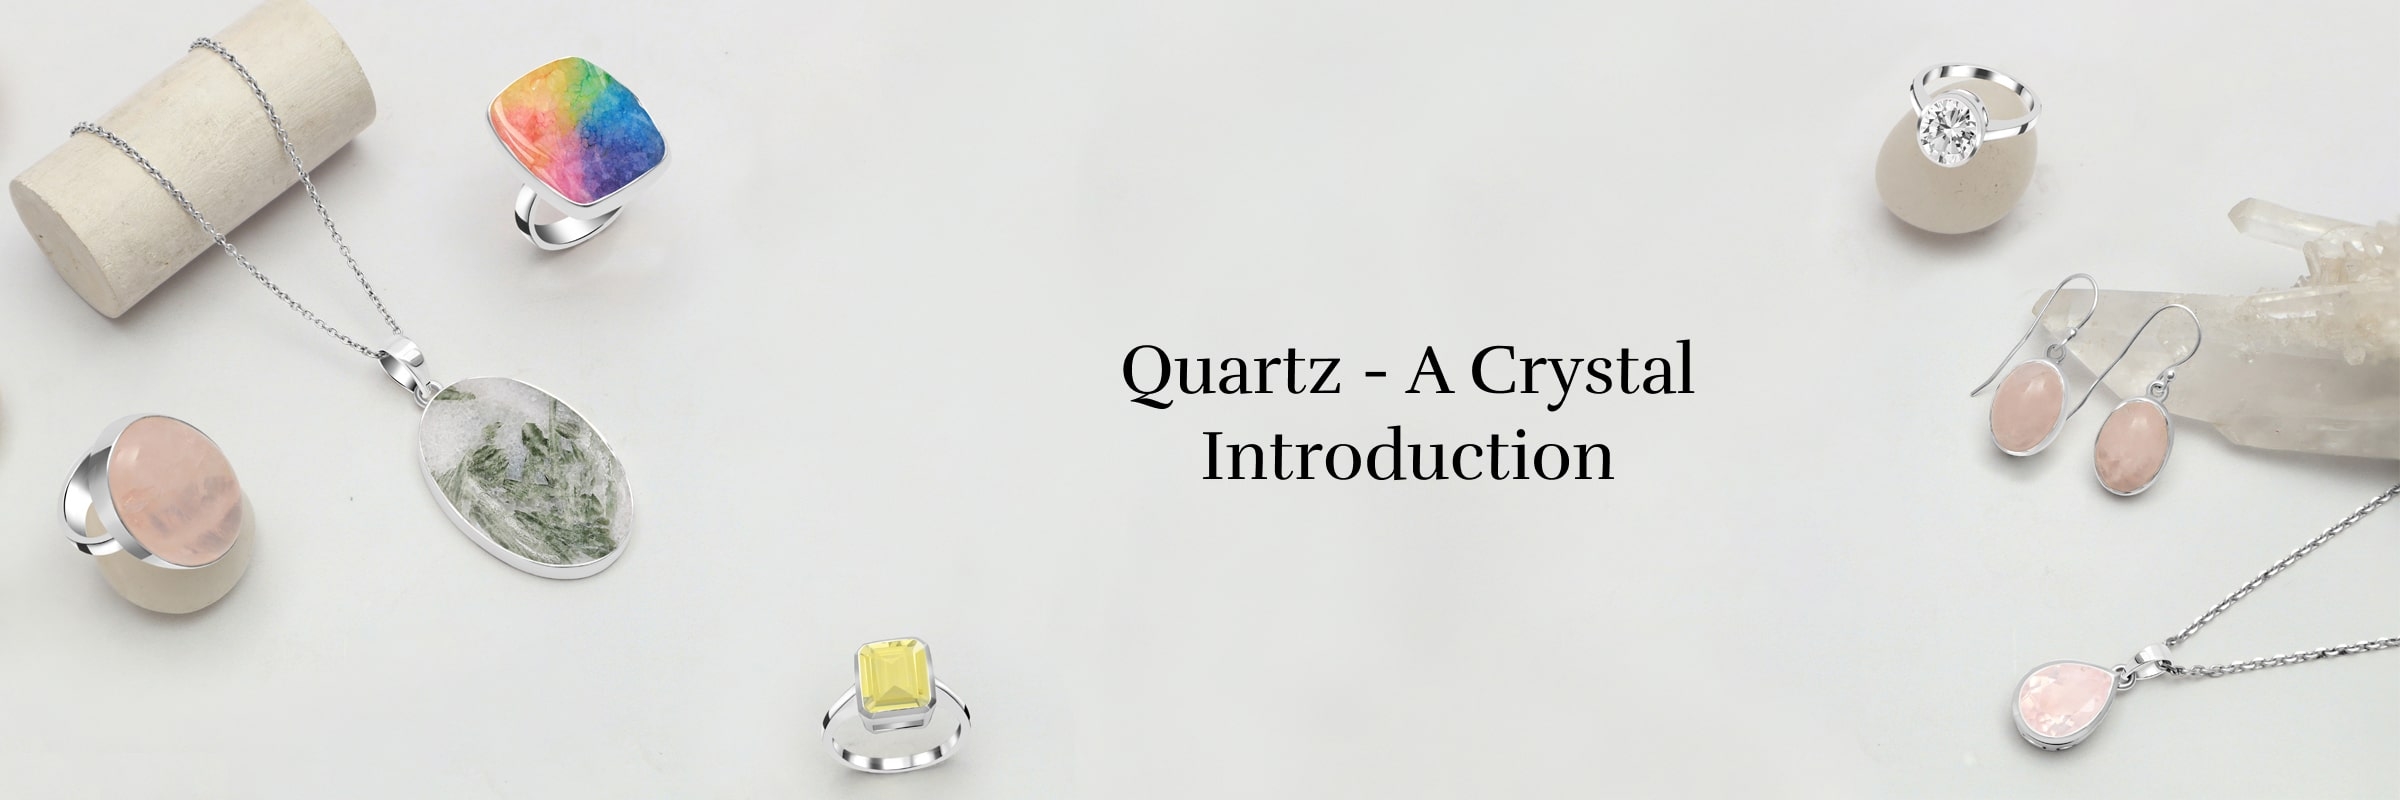 What is Quartz